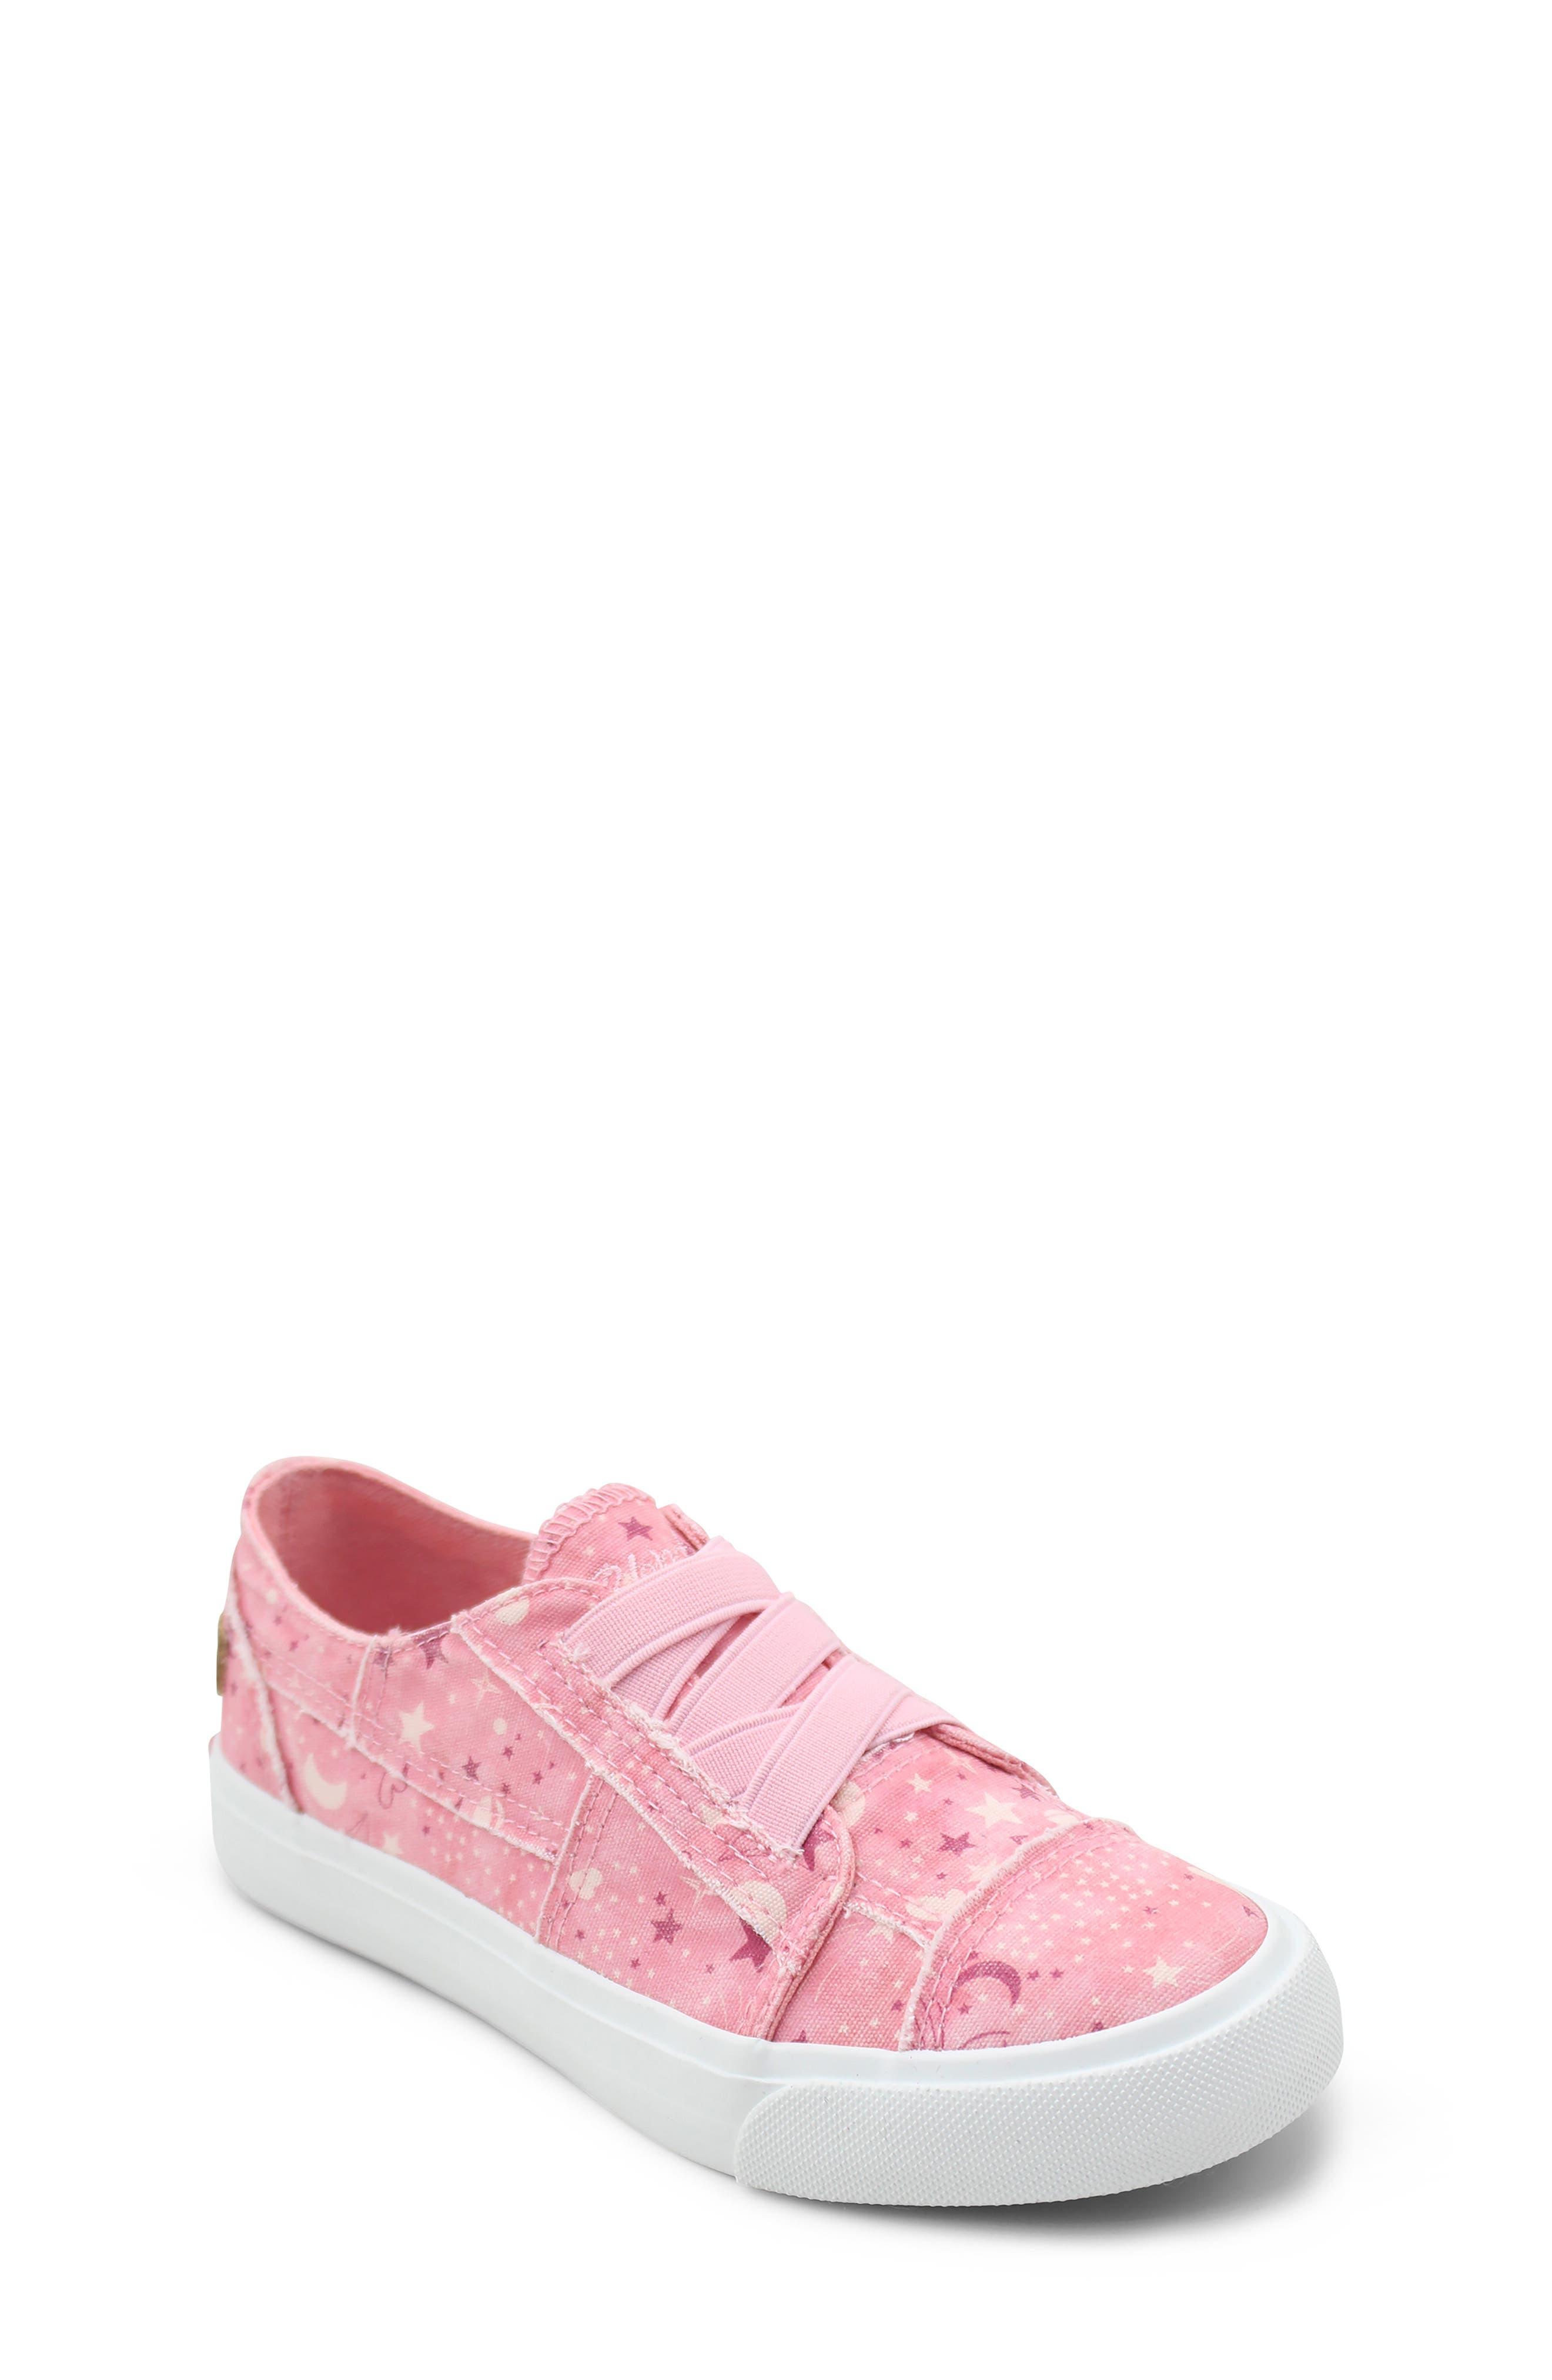 Blowfish Marley Sneaker in Pink | Lyst